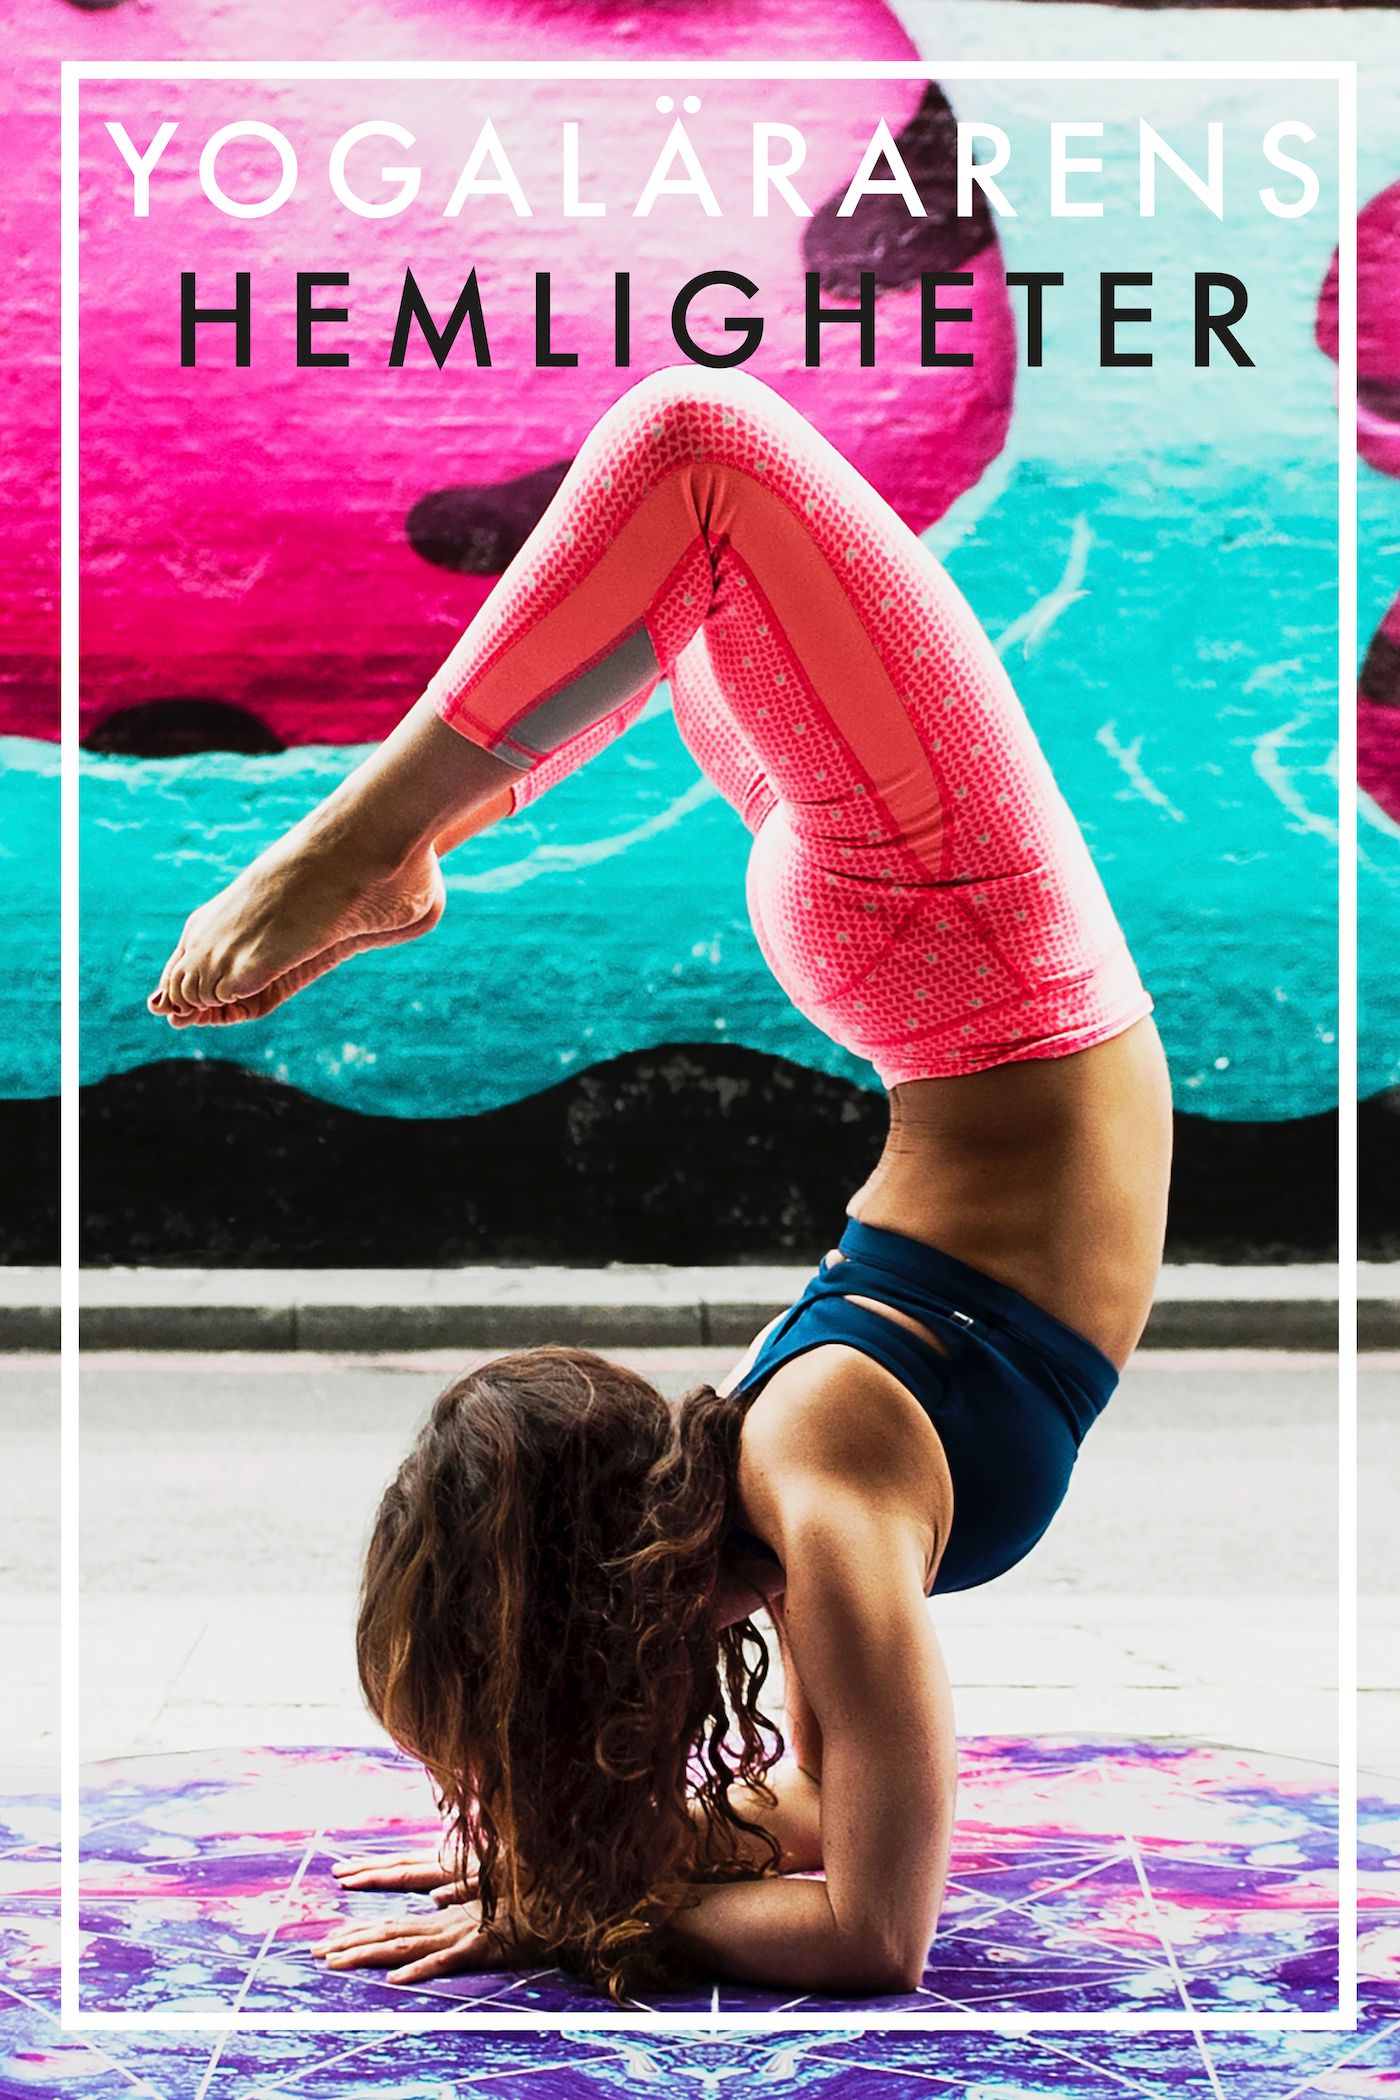 Yogalärarens hemligheter (Epub2), e-bog af Nicotext Förlag